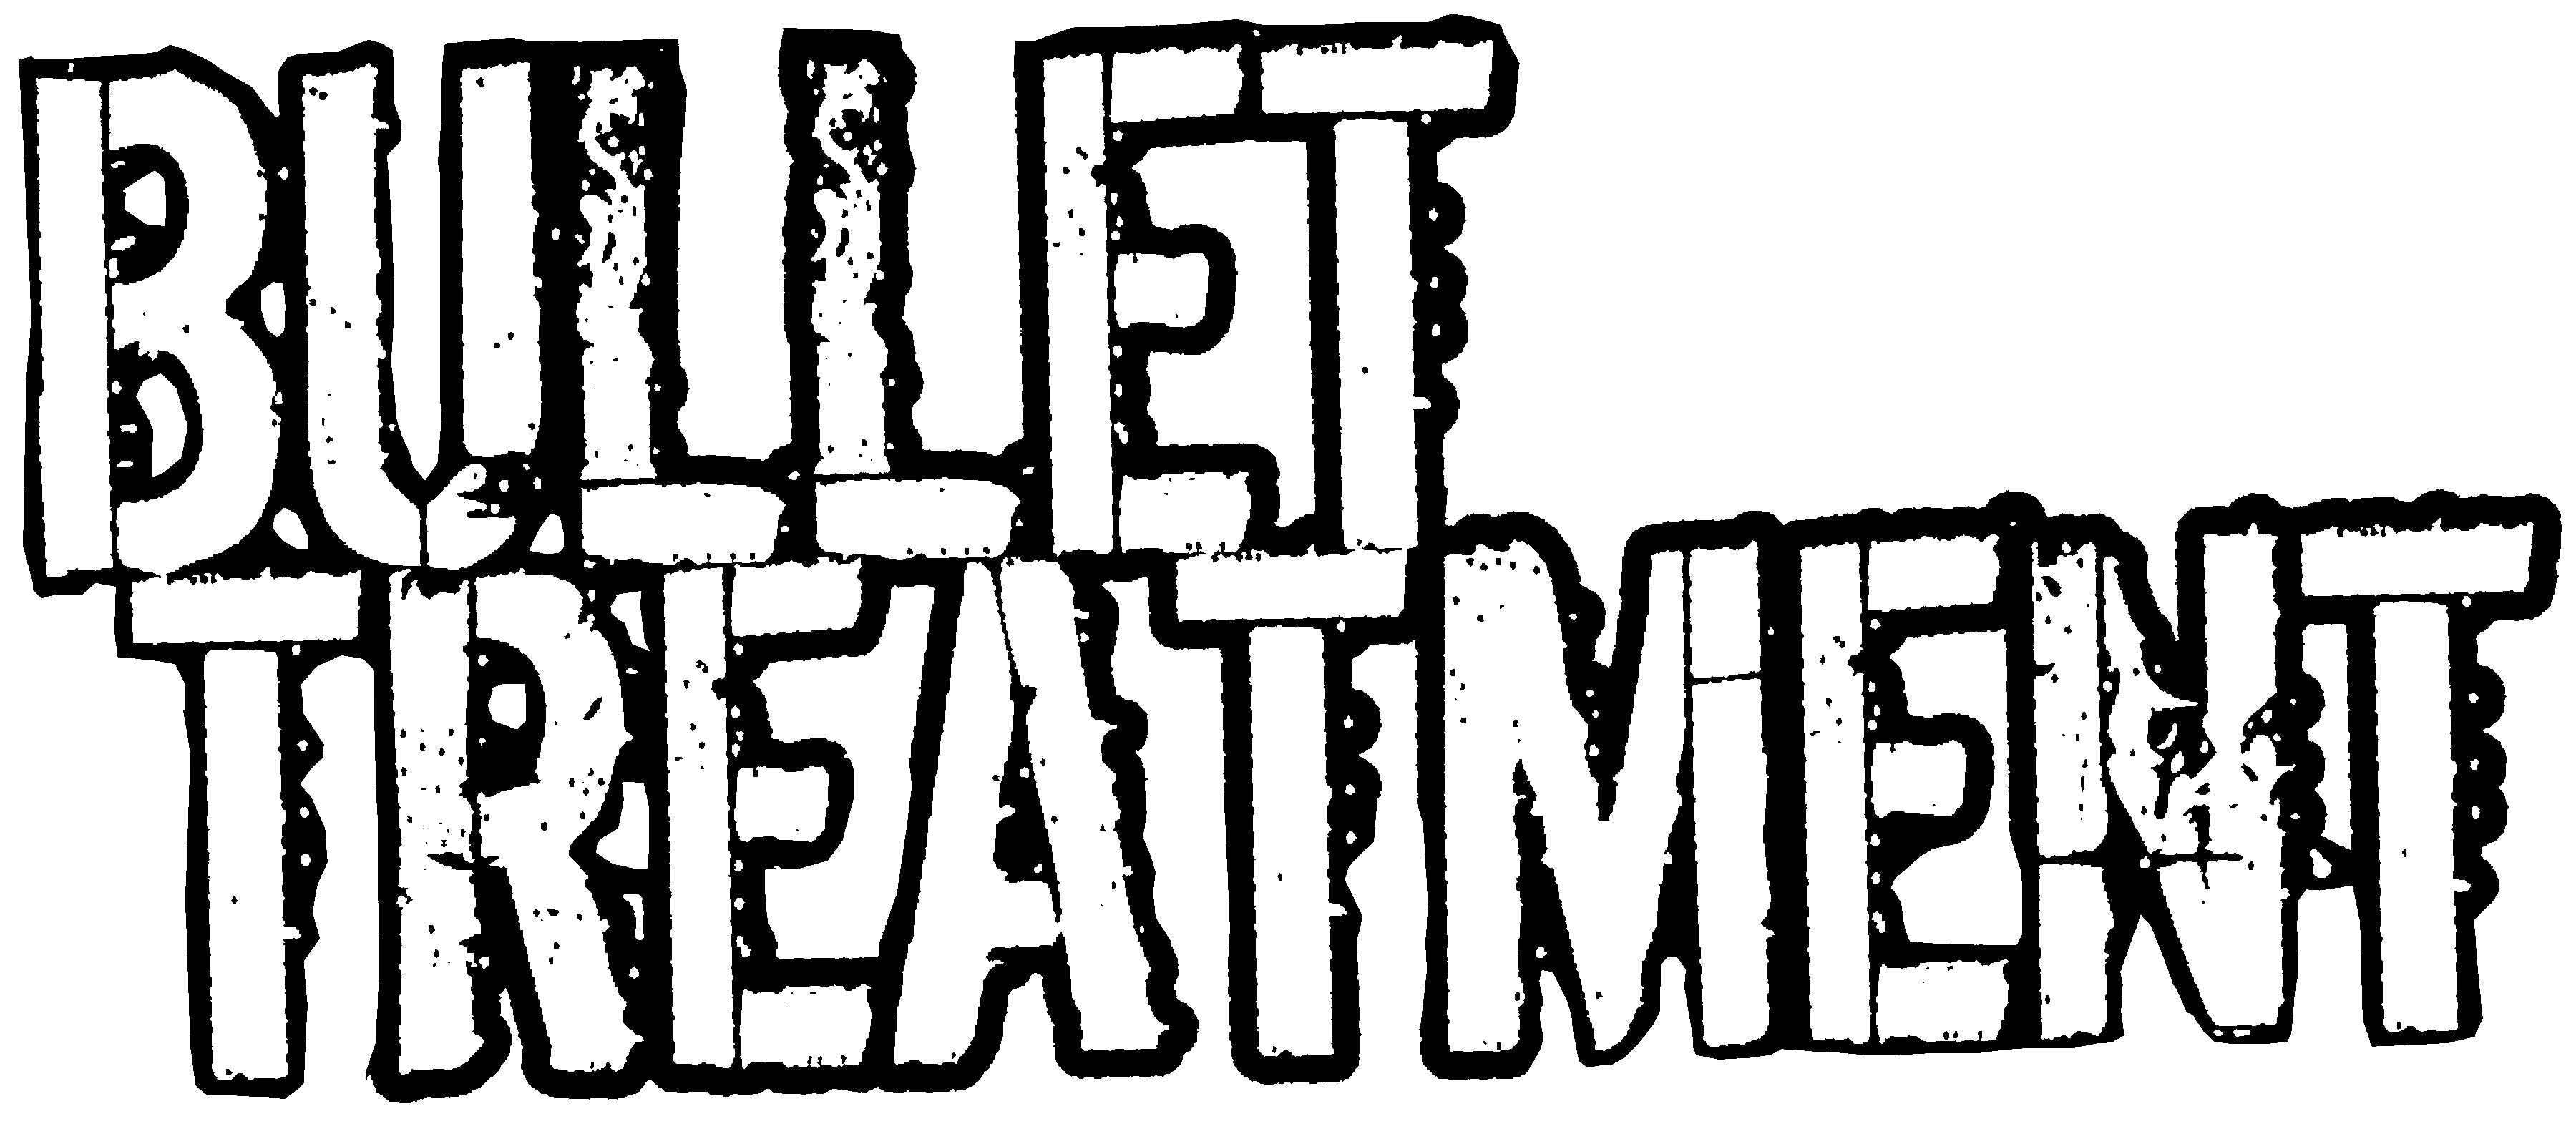 bullet treatment logo